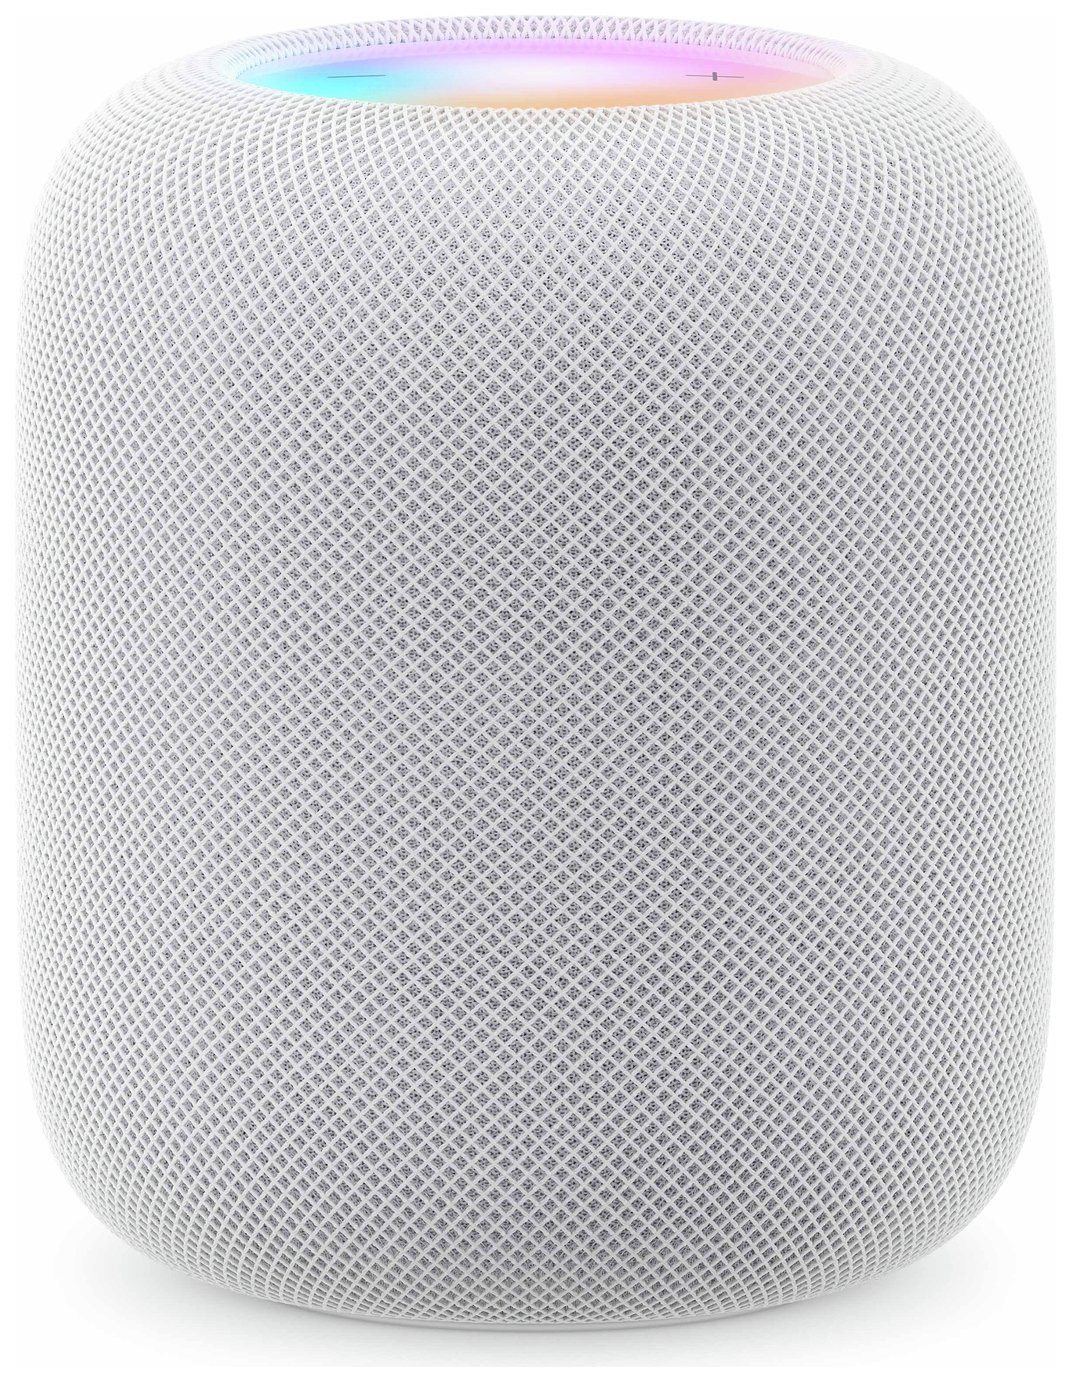 Apple HomePod Smart Speaker - White